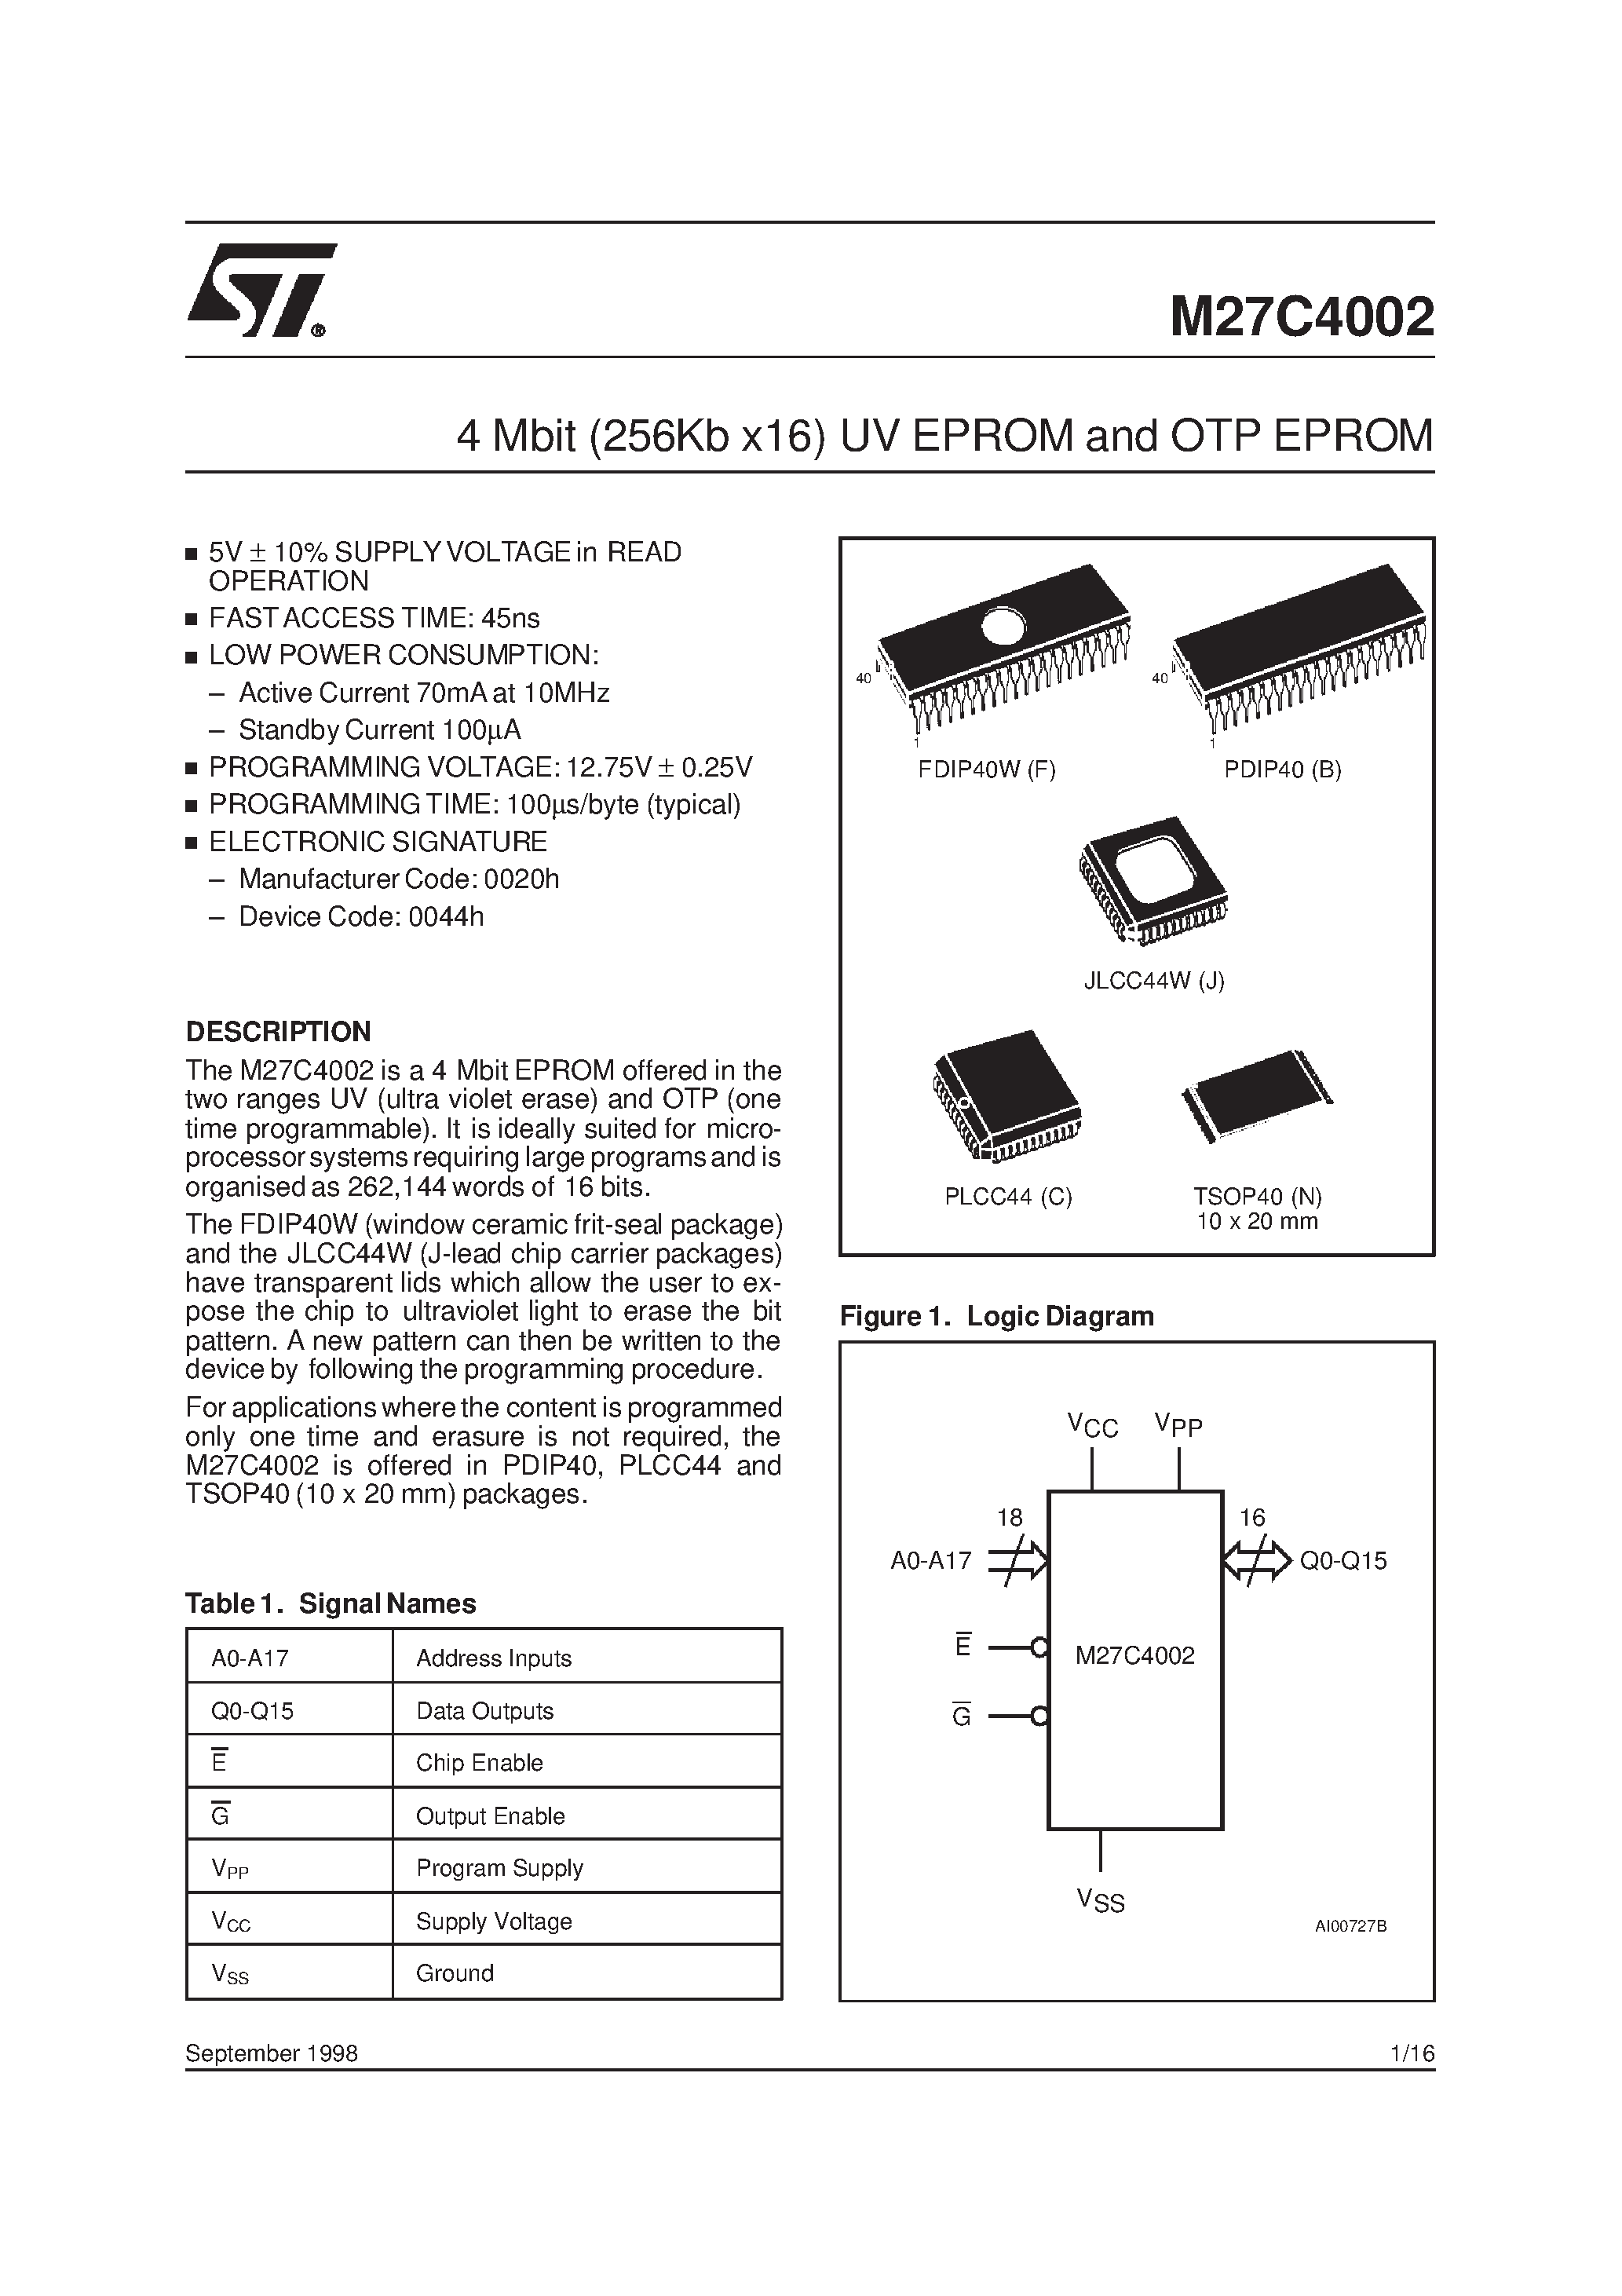 Datasheet M27C4002-10C6X - 4 Mbit 256Kb x16 UV EPROM and OTP EPROM page 1